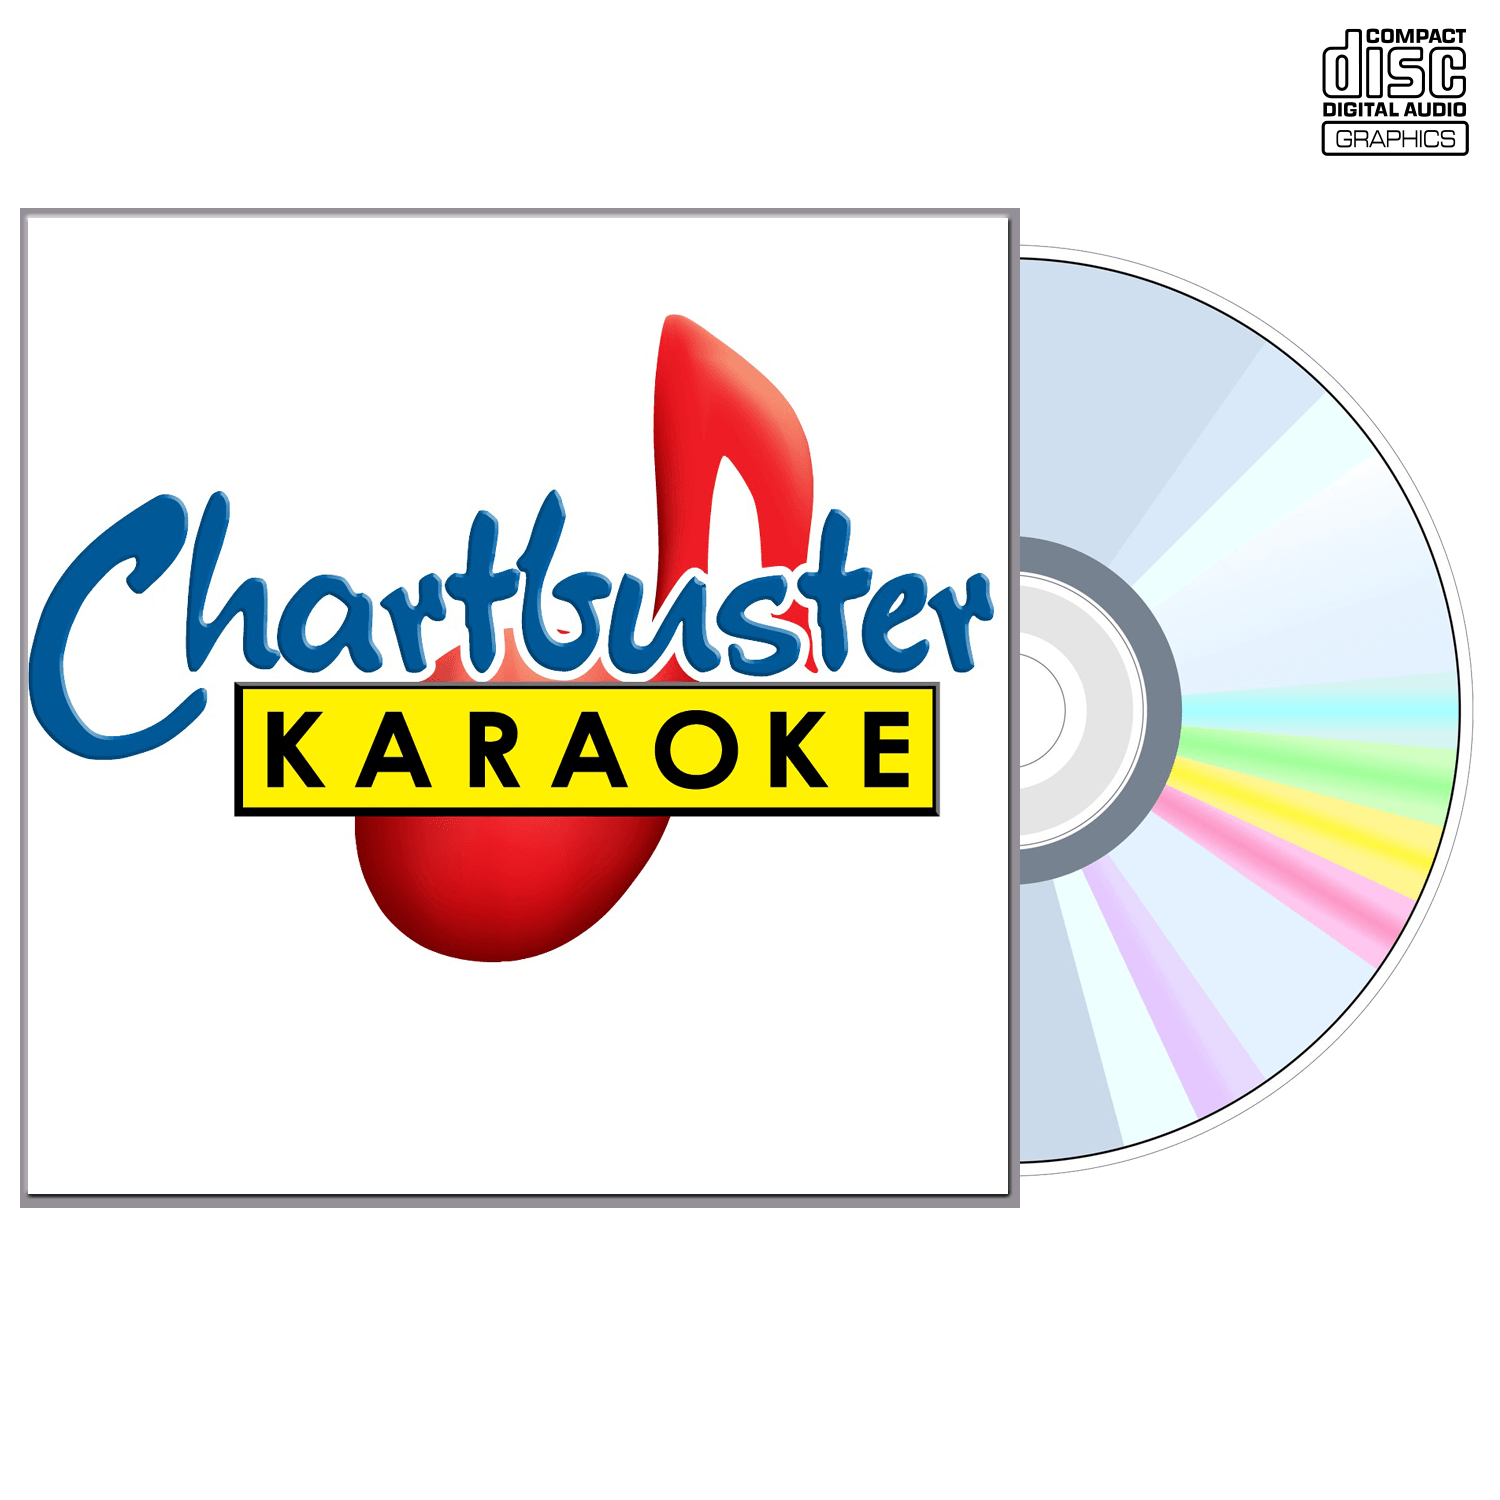 Alabama Vol 4 - CD+G - Chartbuster Karaoke - Karaoke Home Entertainment